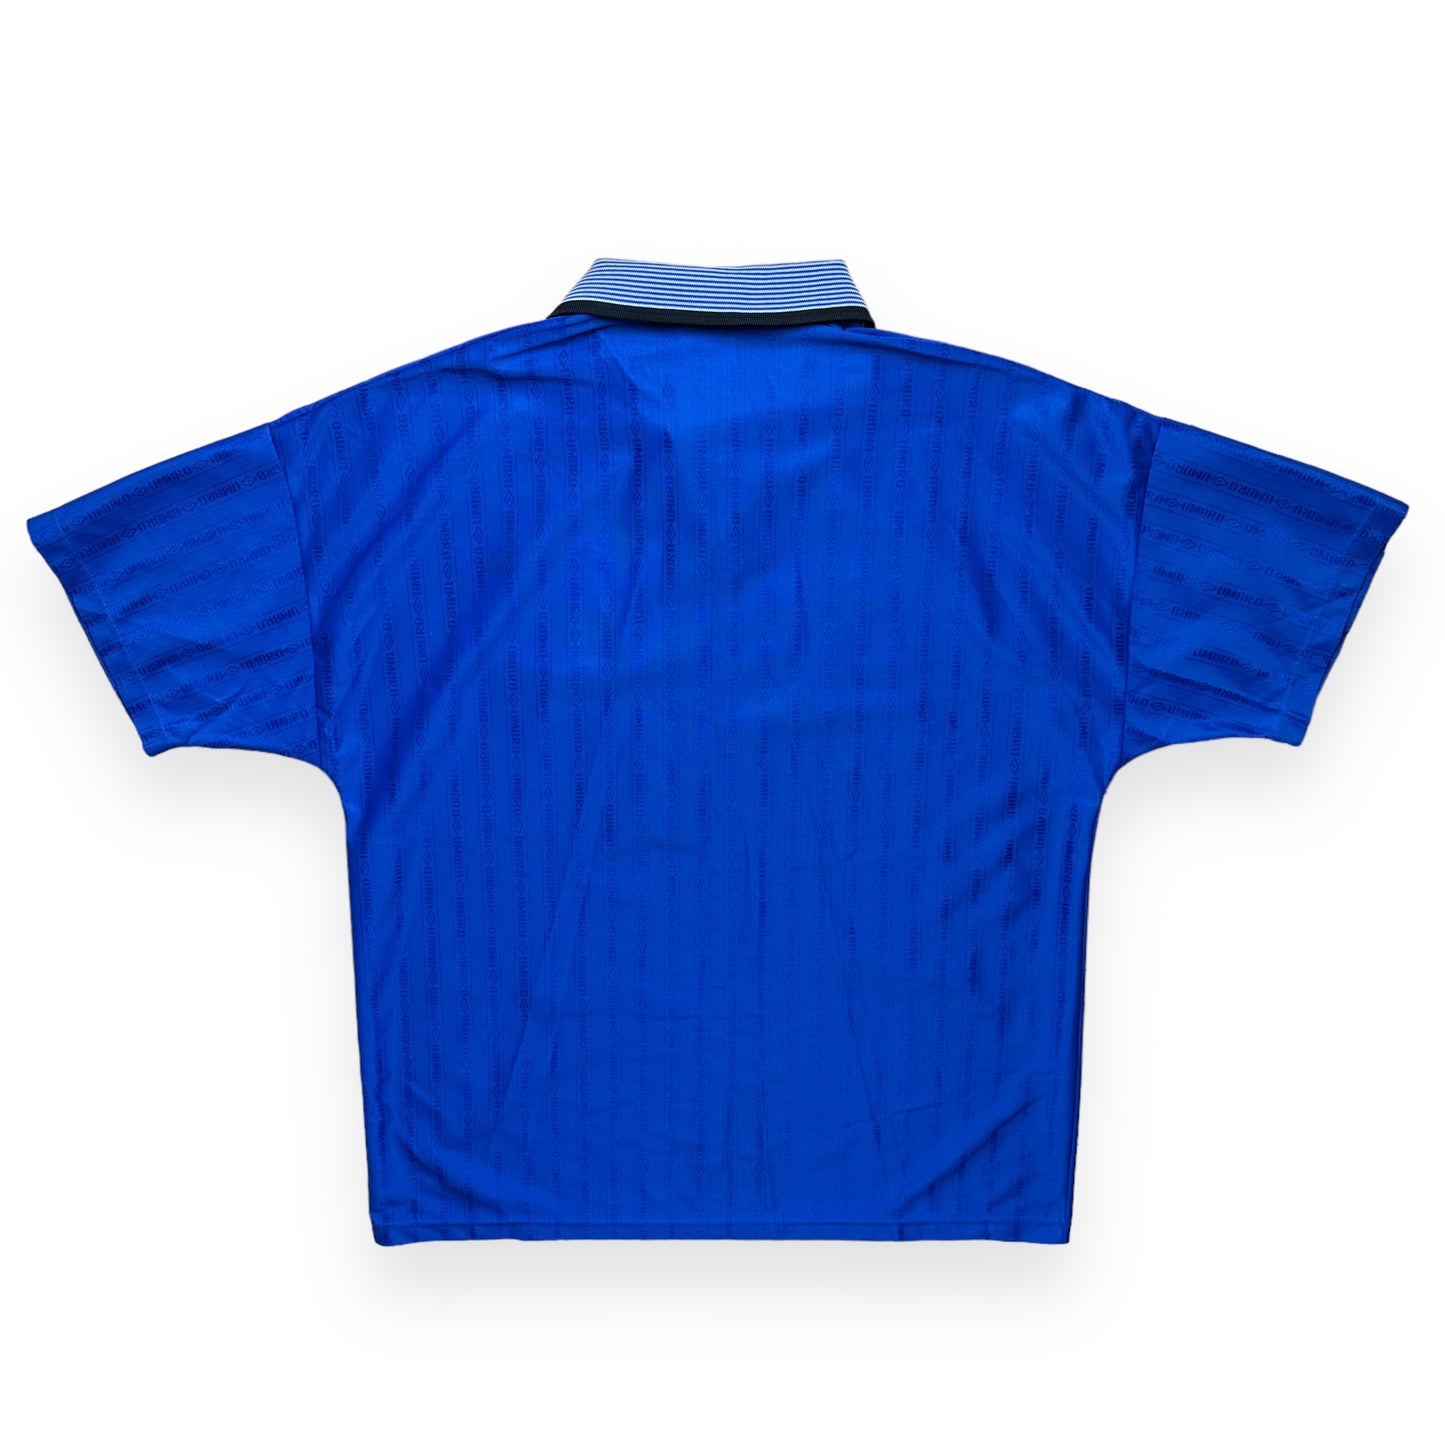 Everton 1995-97 Home Shirt (XL)